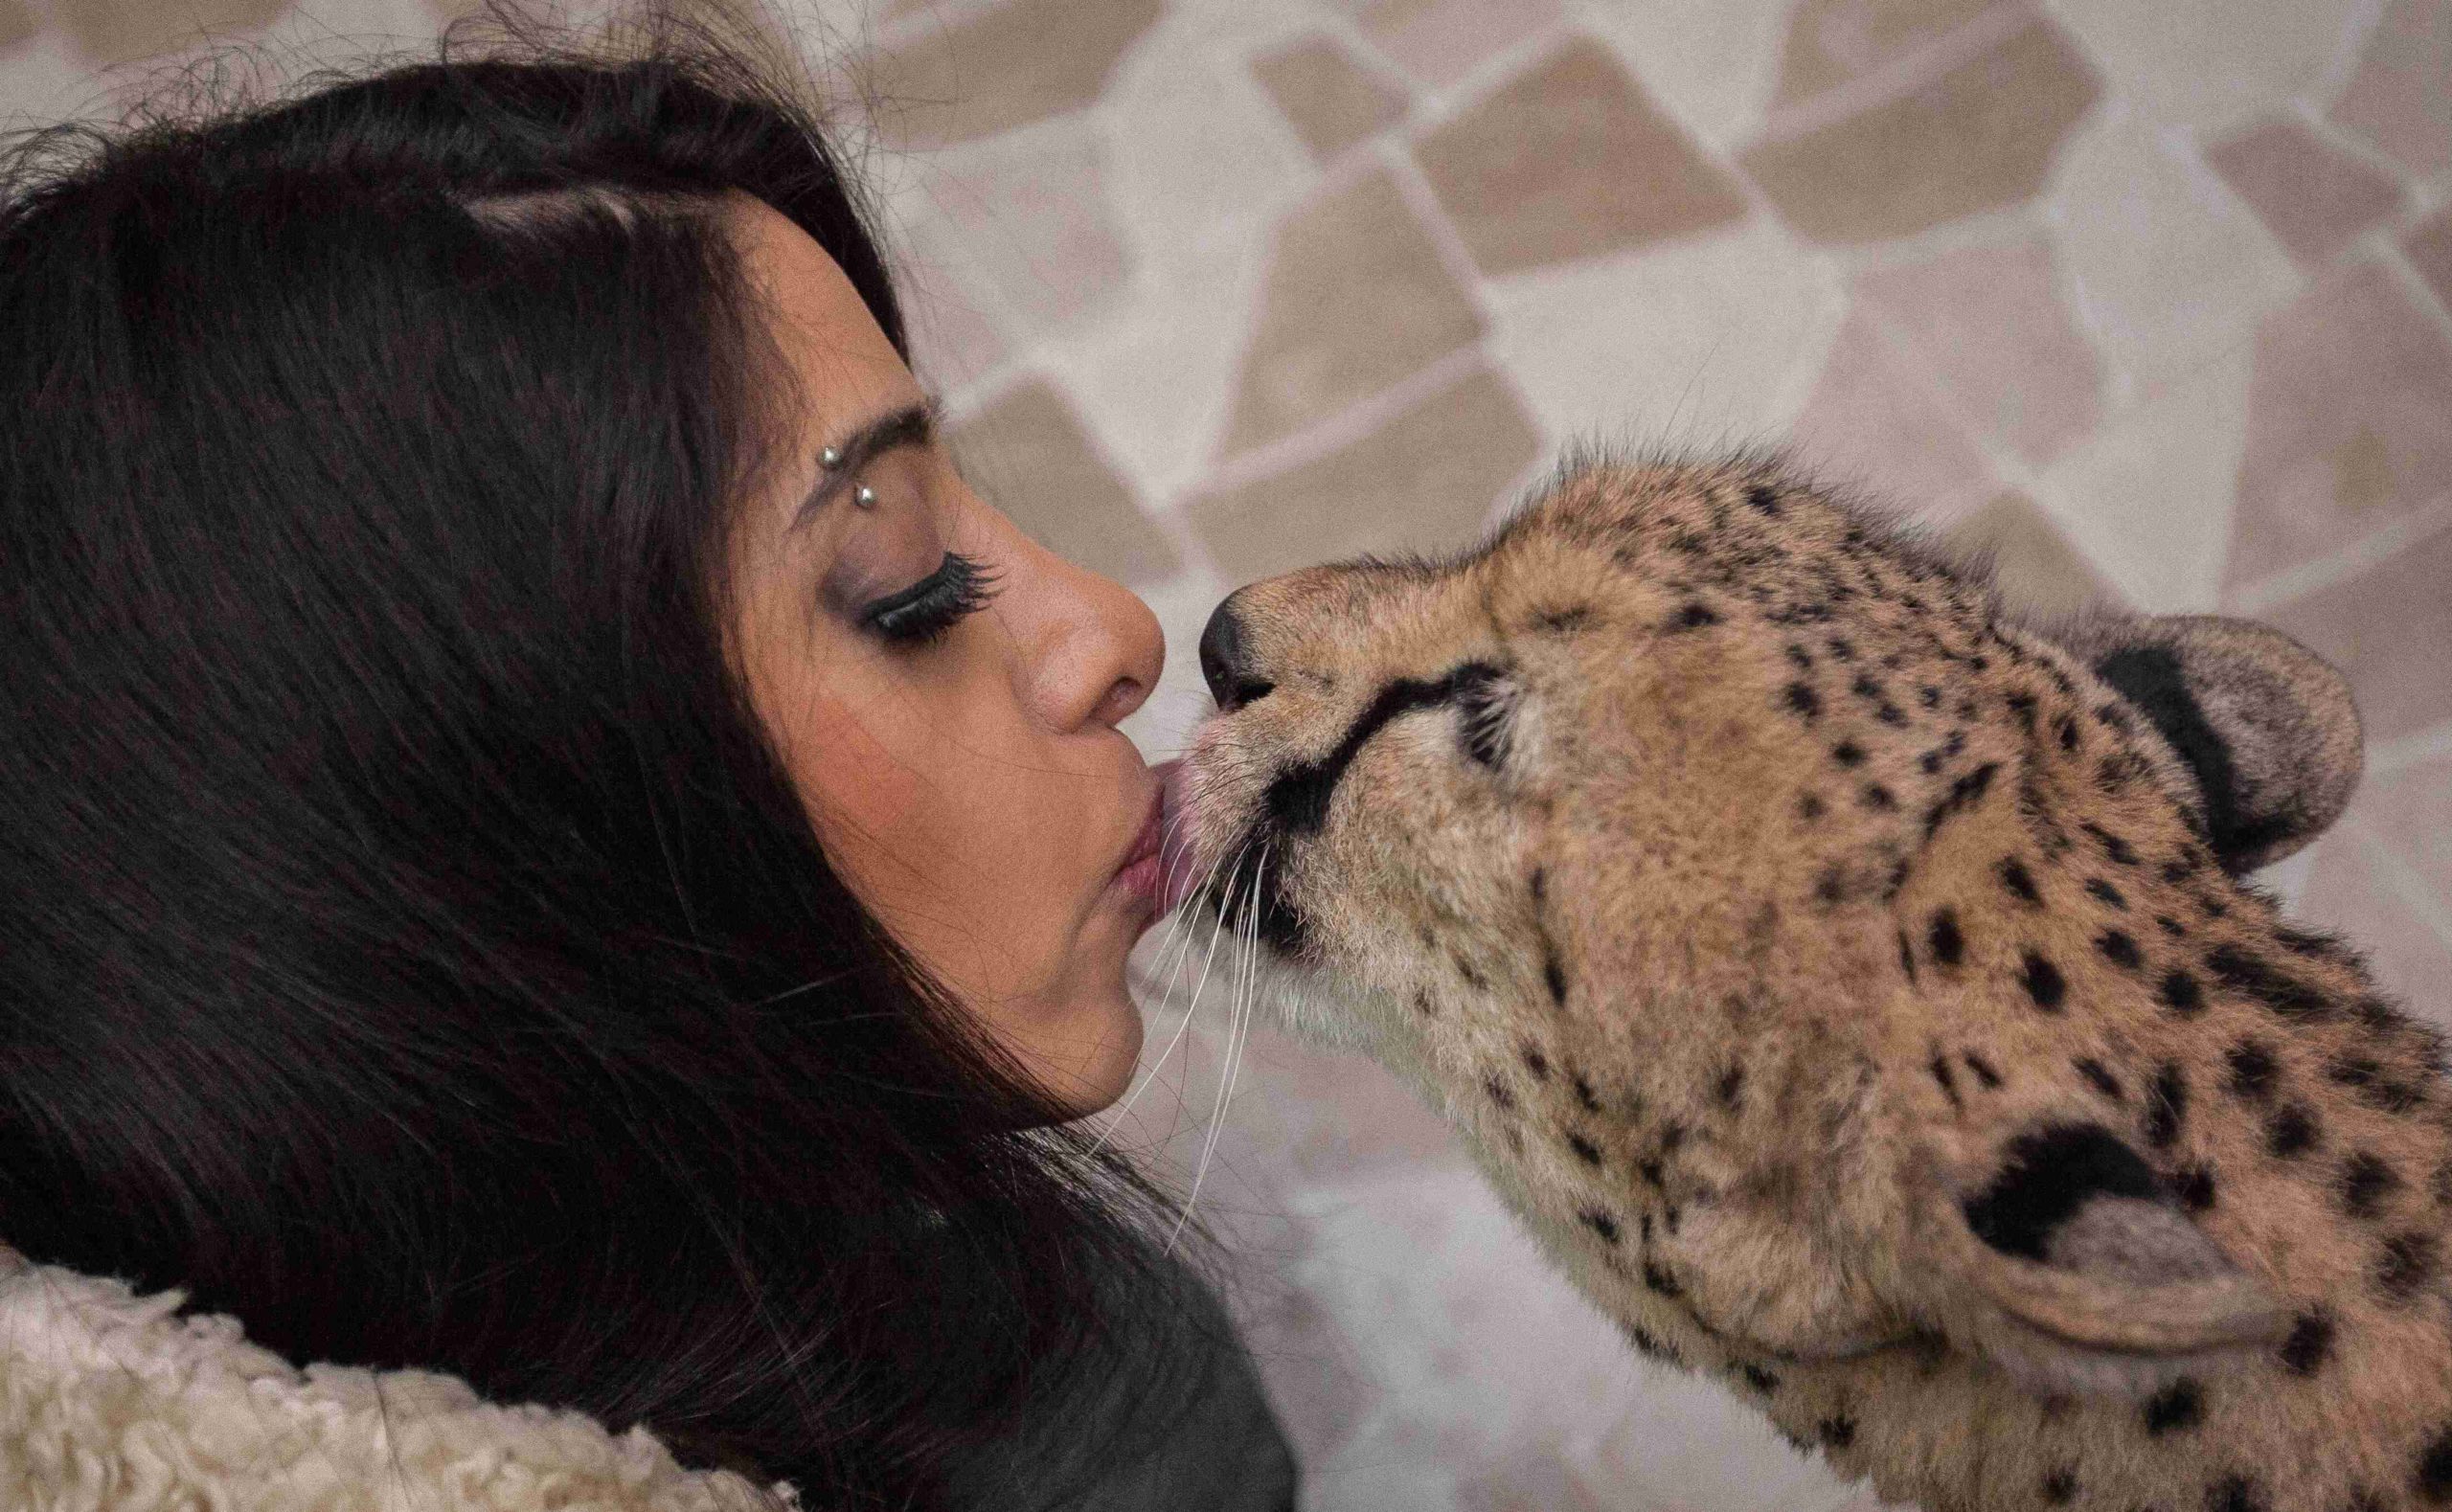 A lady kissing a cheetah